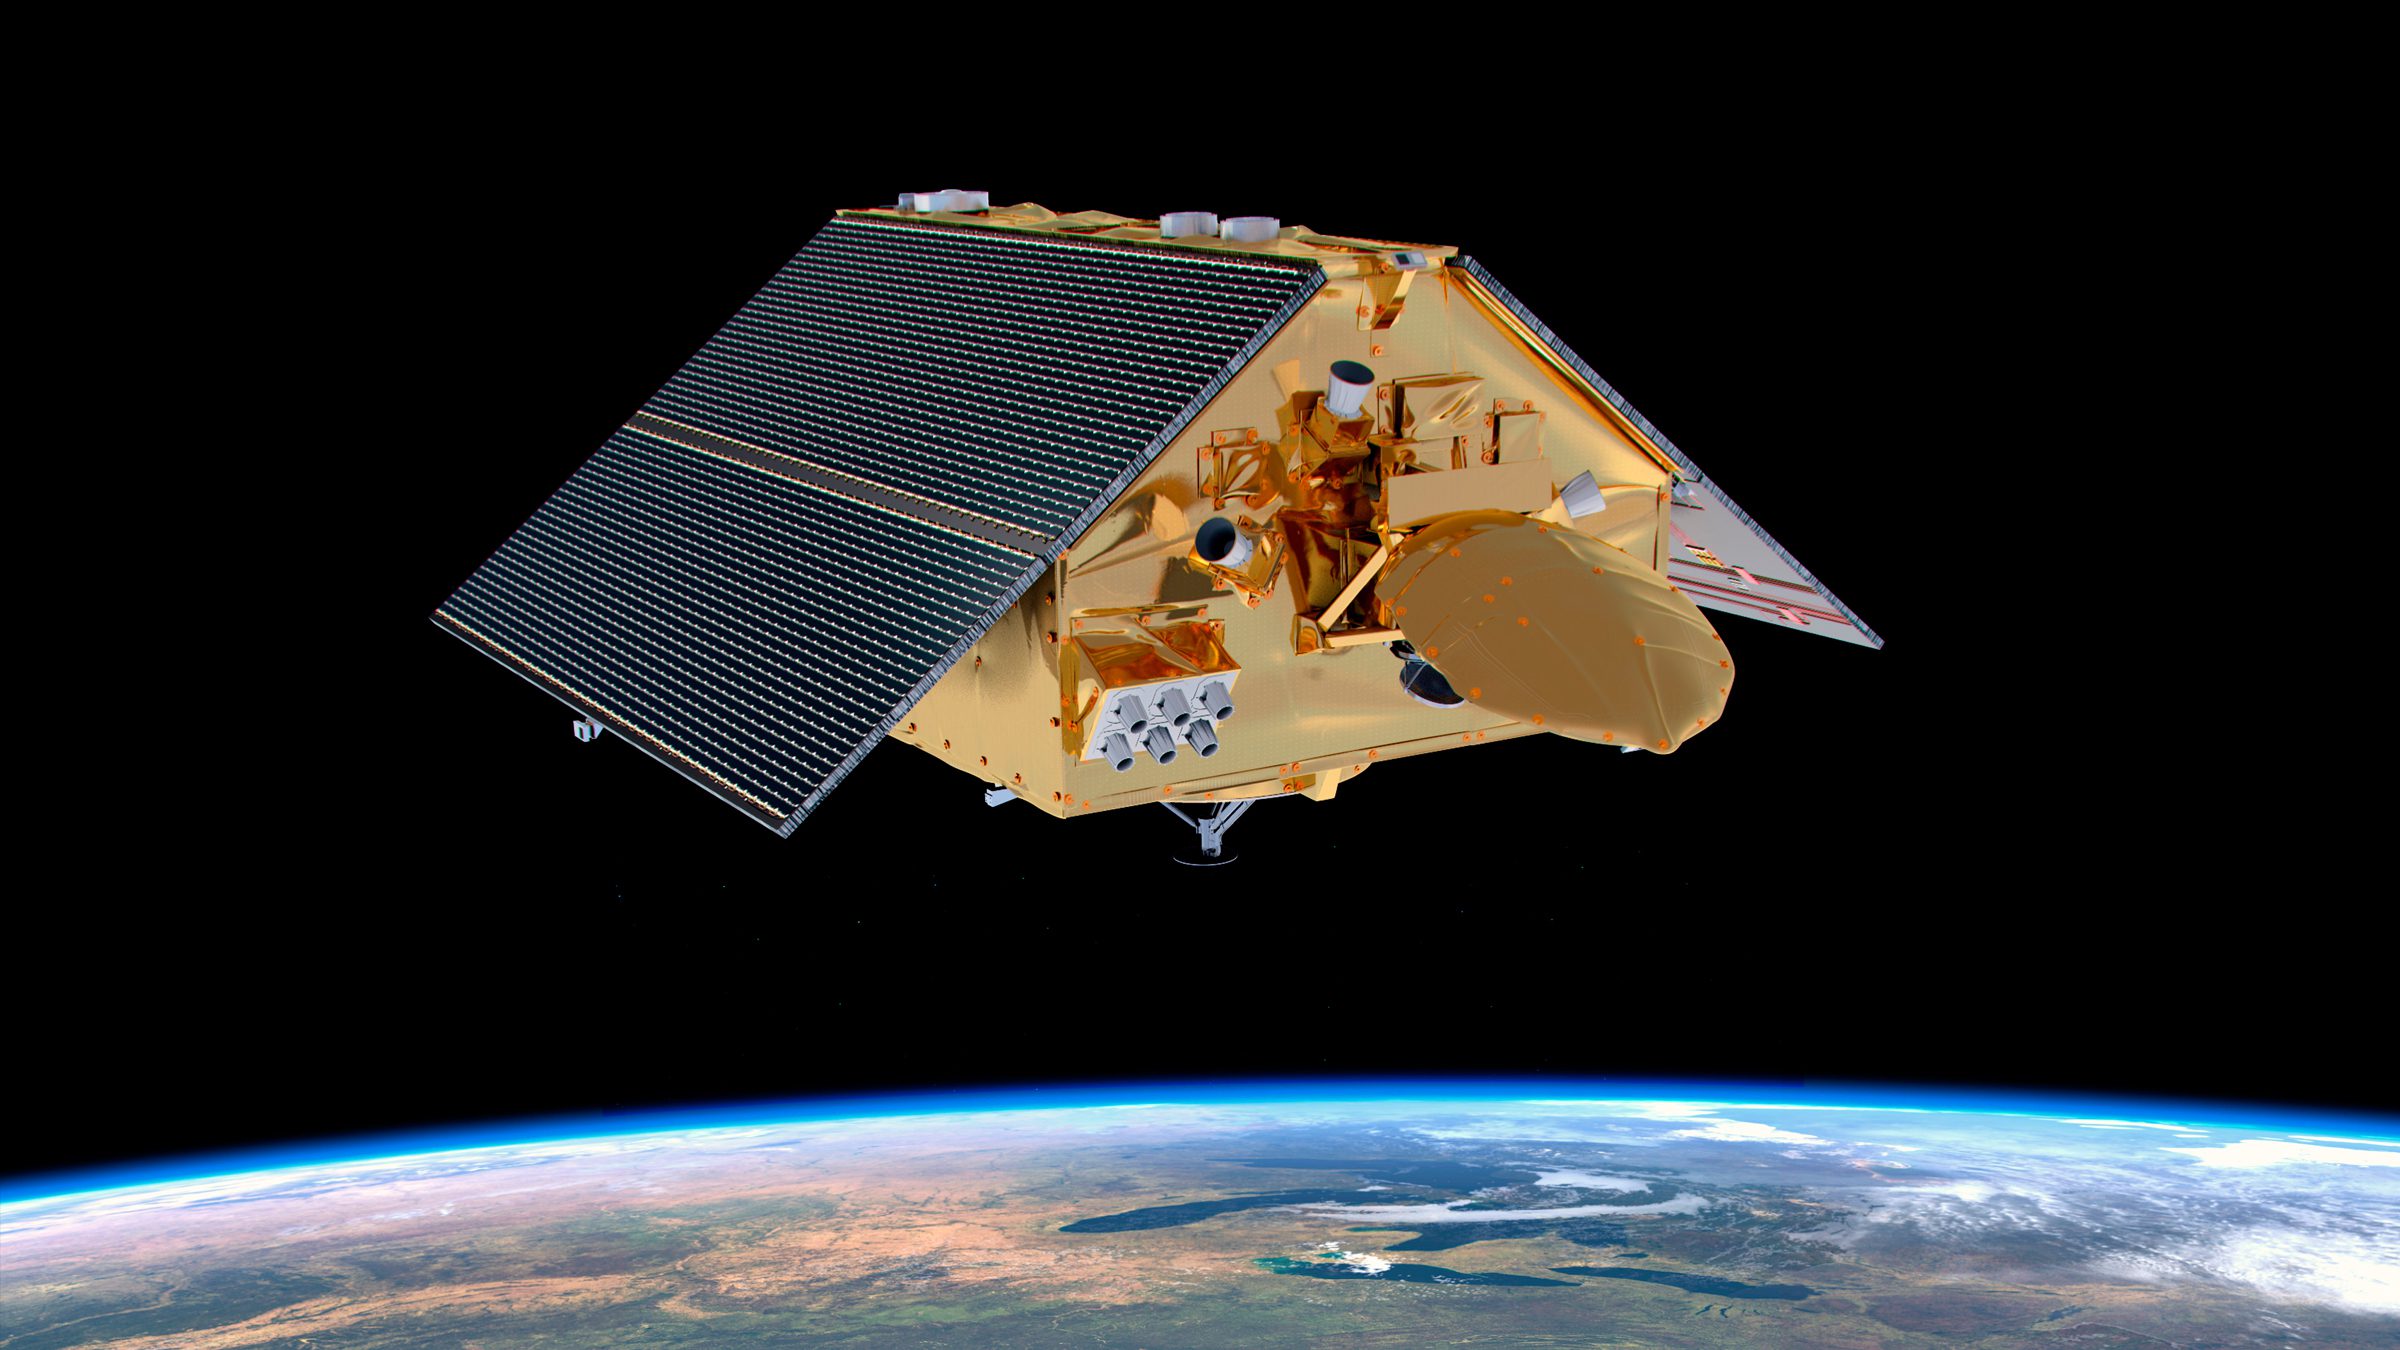 Ezen az ábrán a Sentinel-6 Michael Freilich műhold az óceán magasságát méri az űrből.